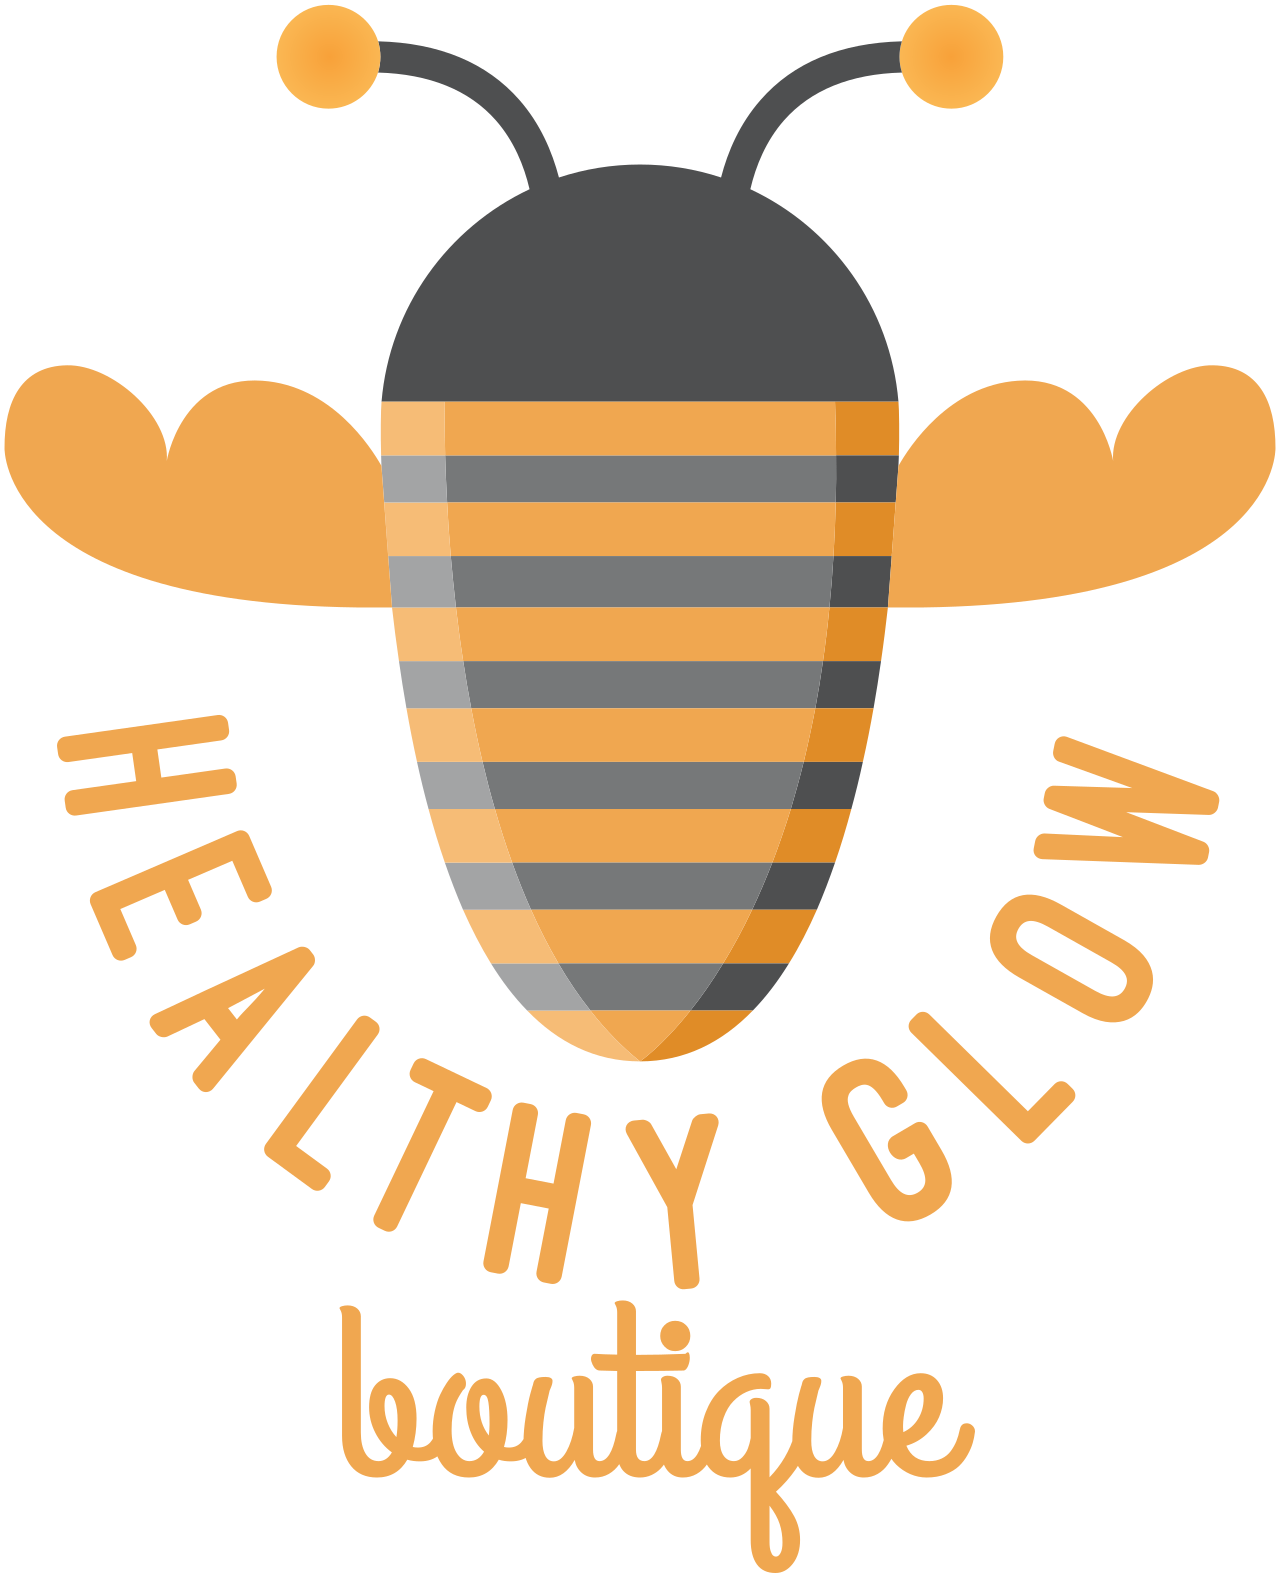 healthy glow's logo